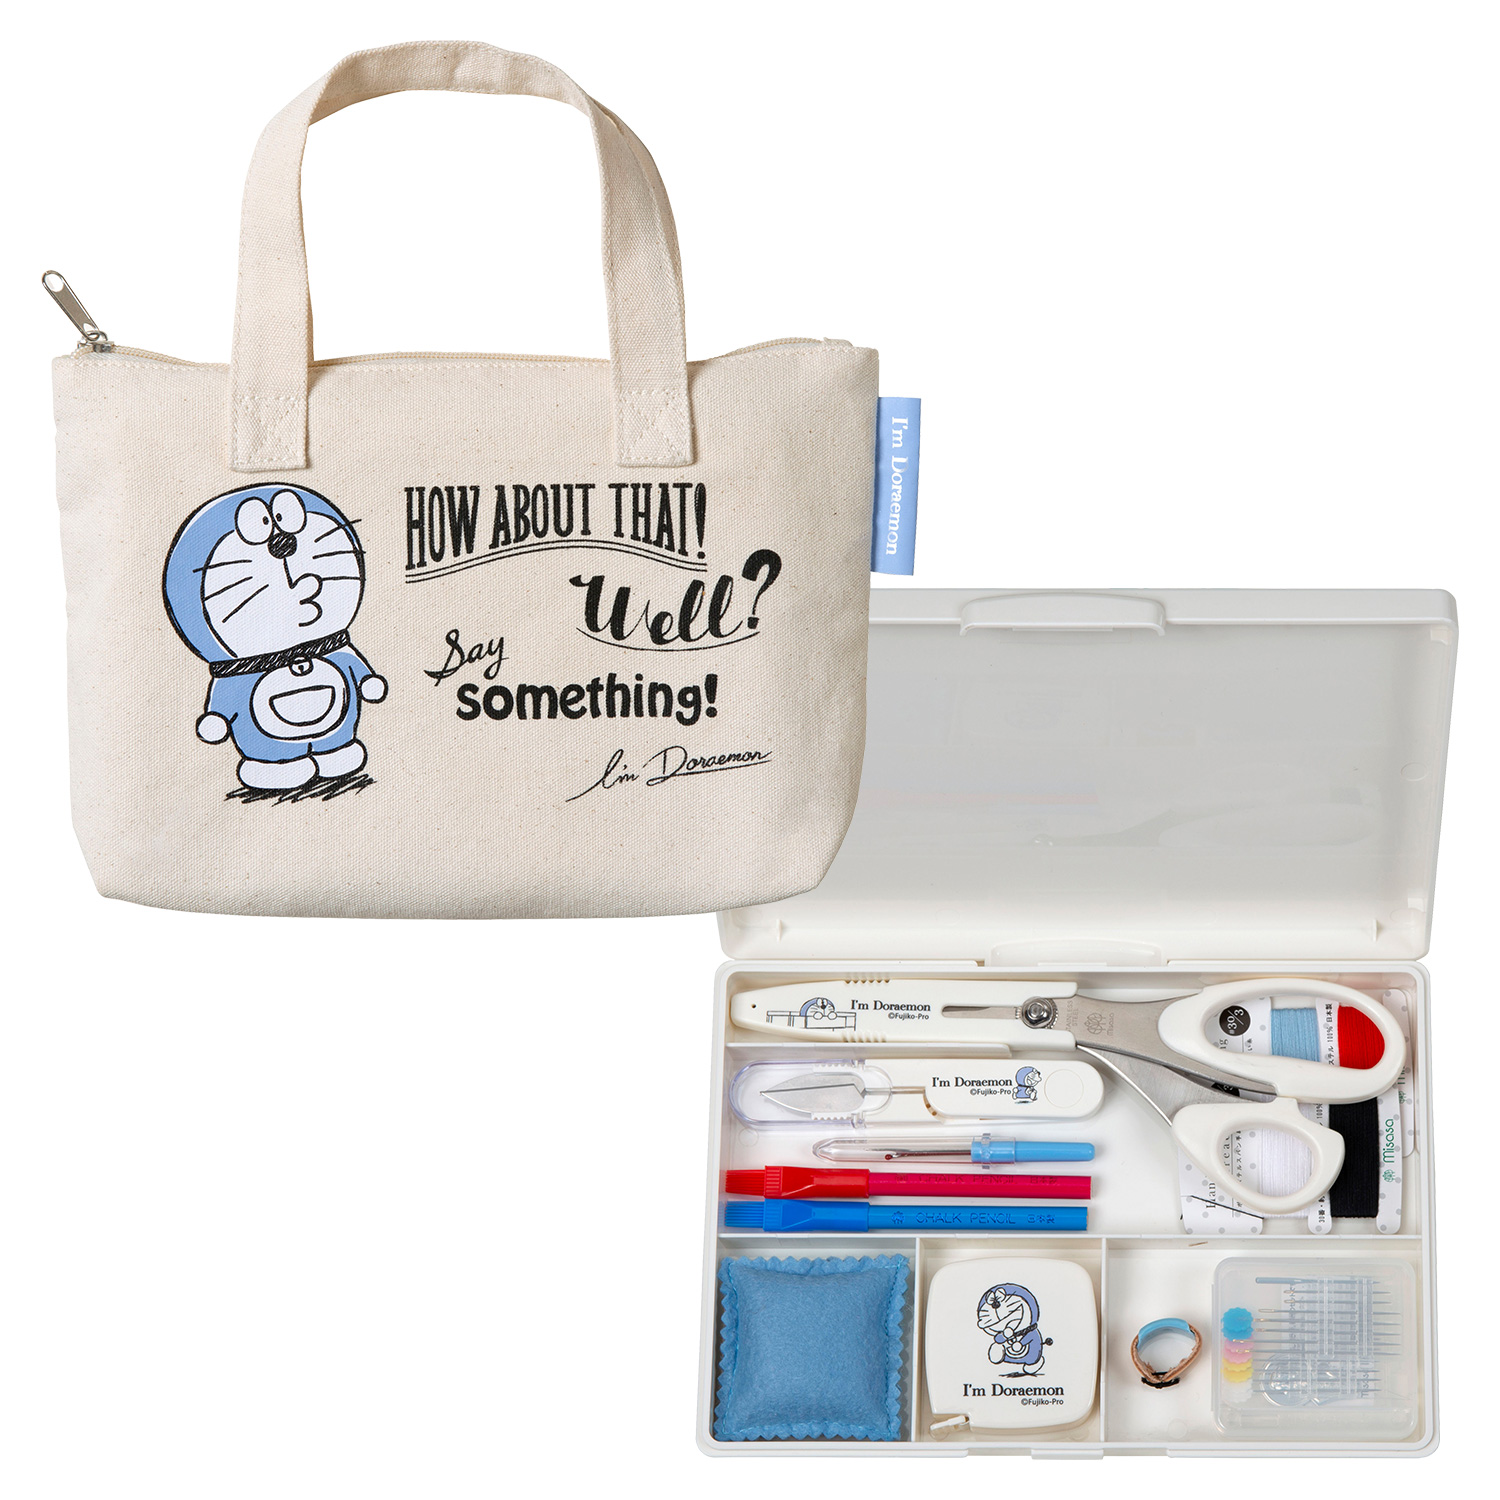 MIS1496 Doraemon sewing set (pcs)